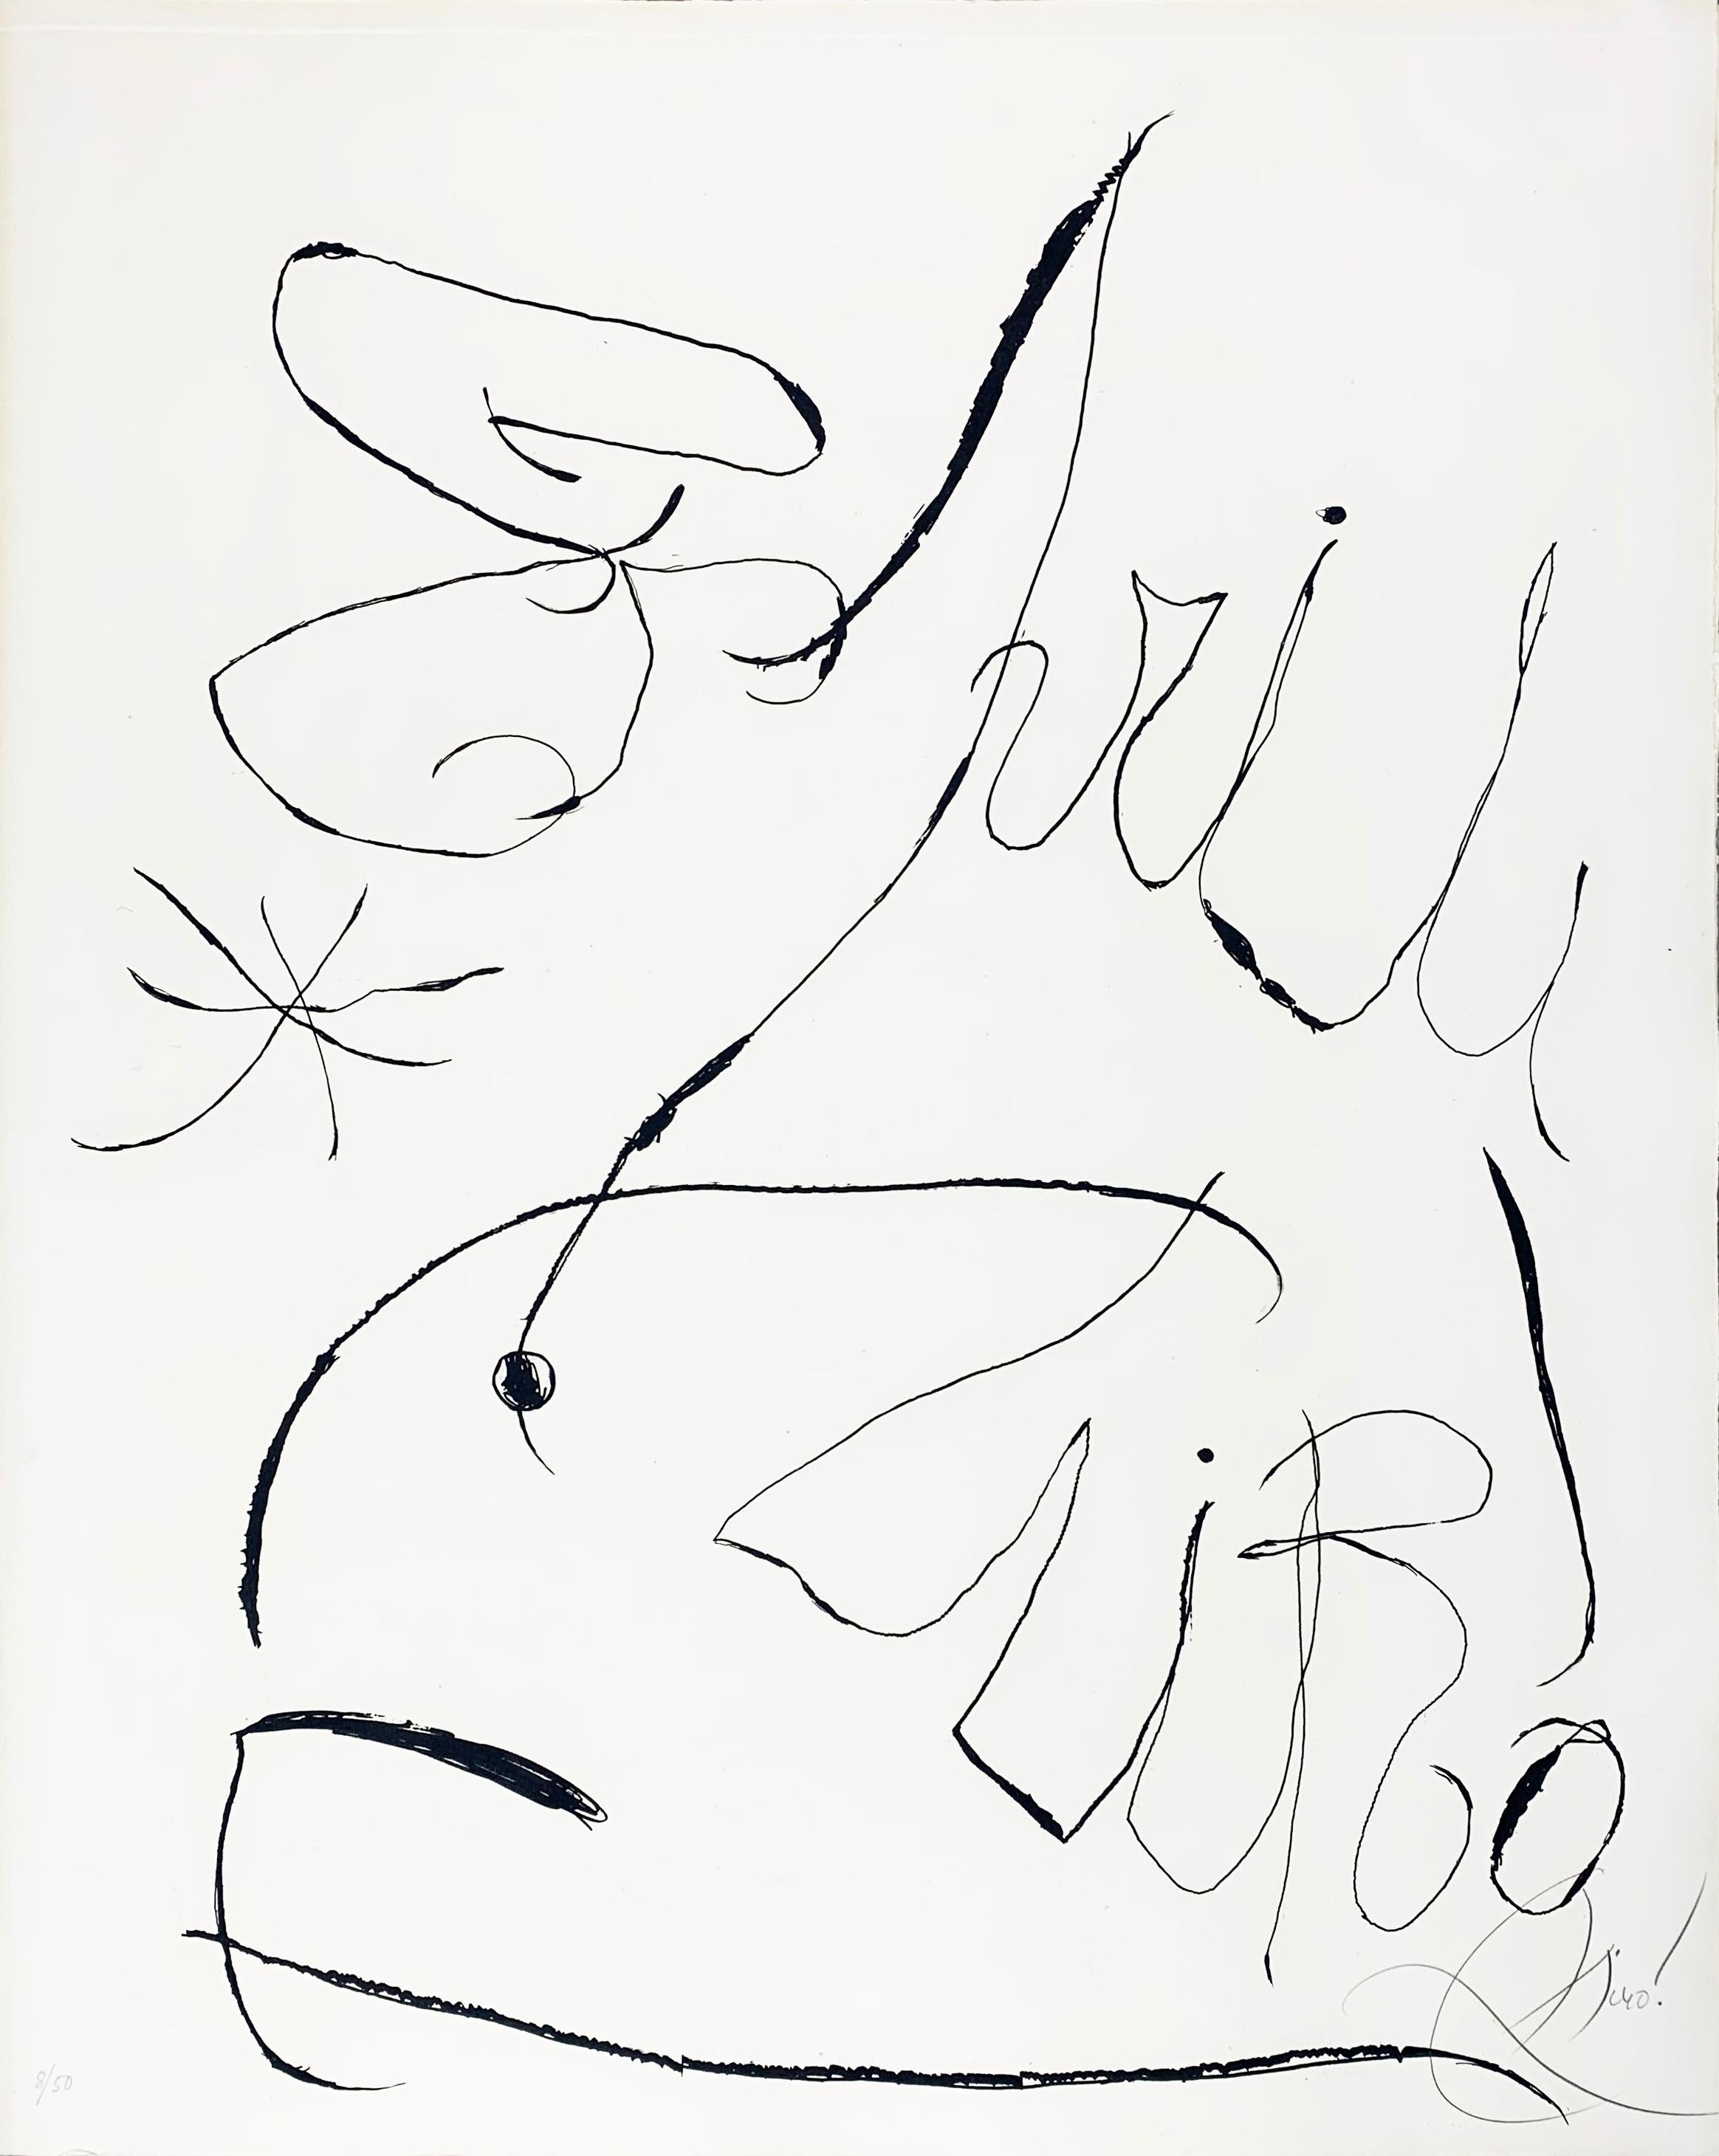 Plaque d'Espriu I - Print de Joan Miró